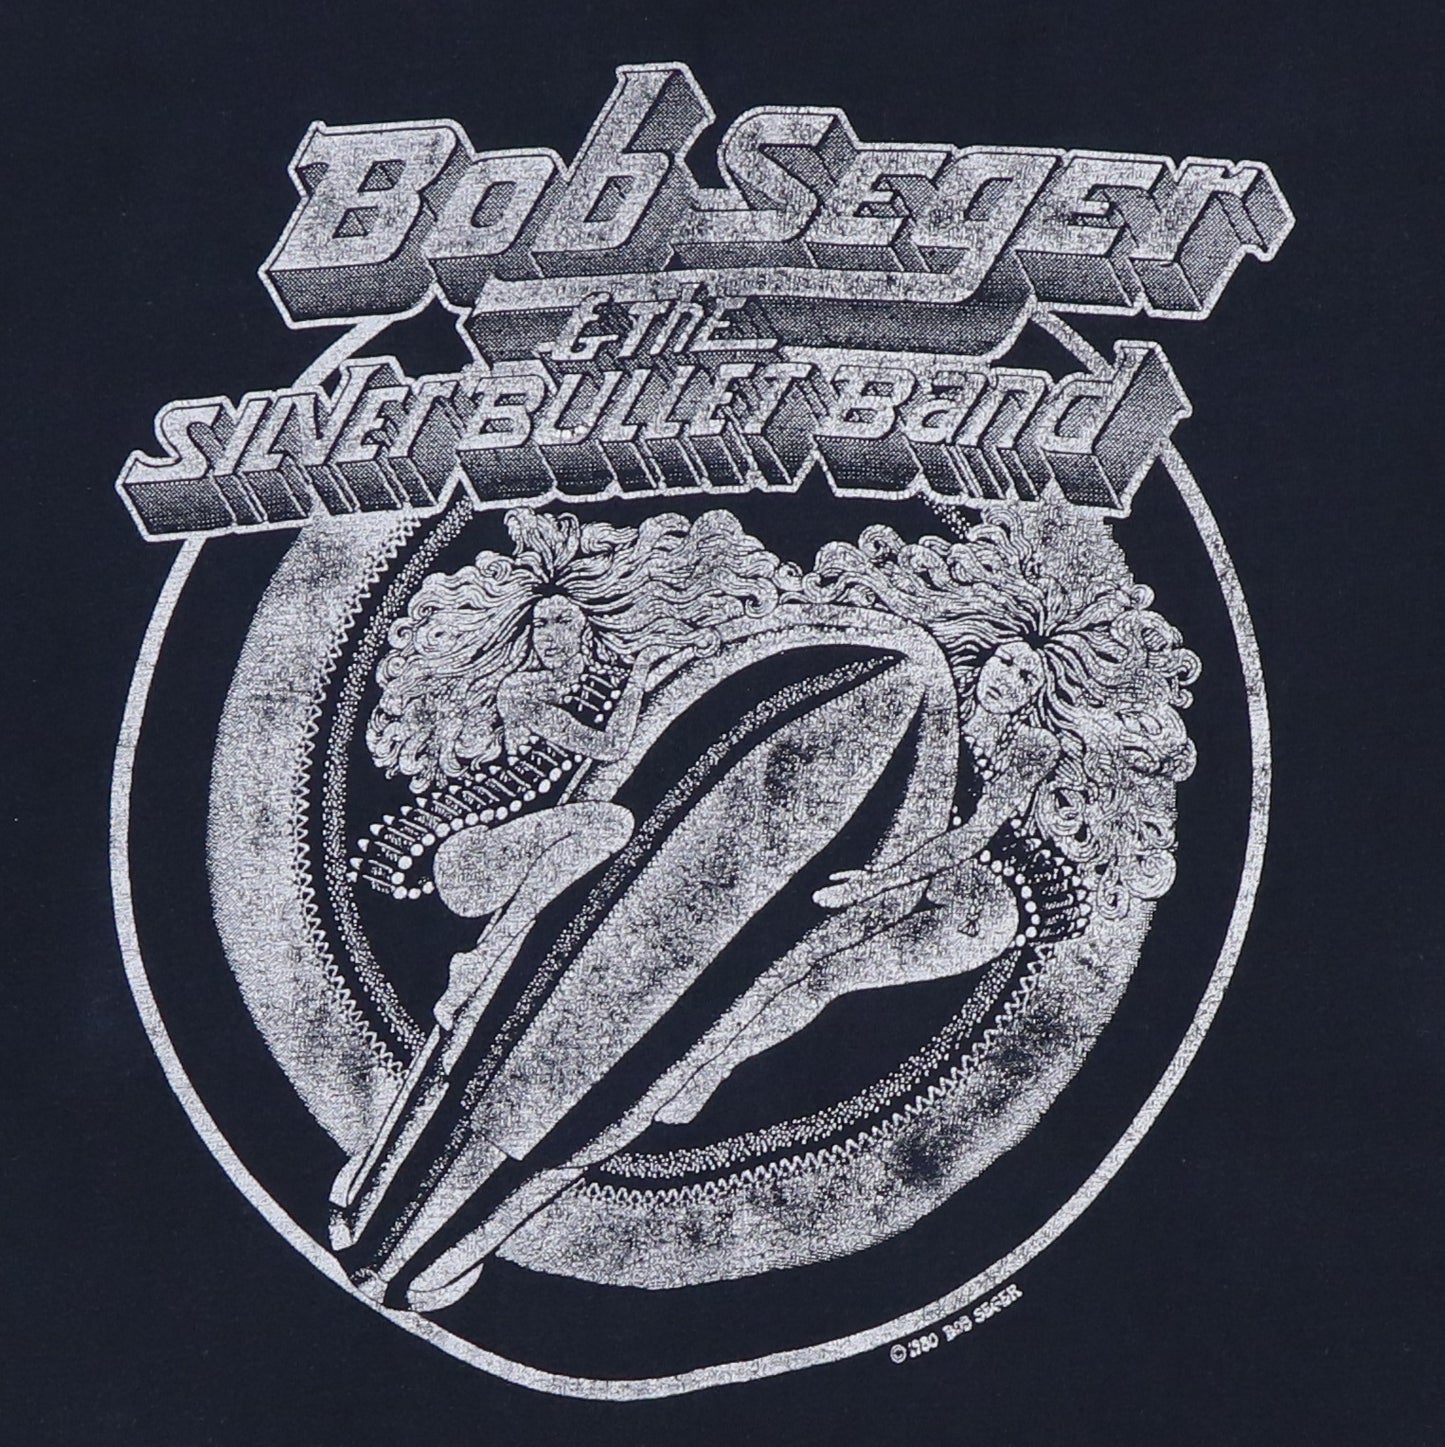 1980 Bob Seger And The Silver Bullet Band Shirt